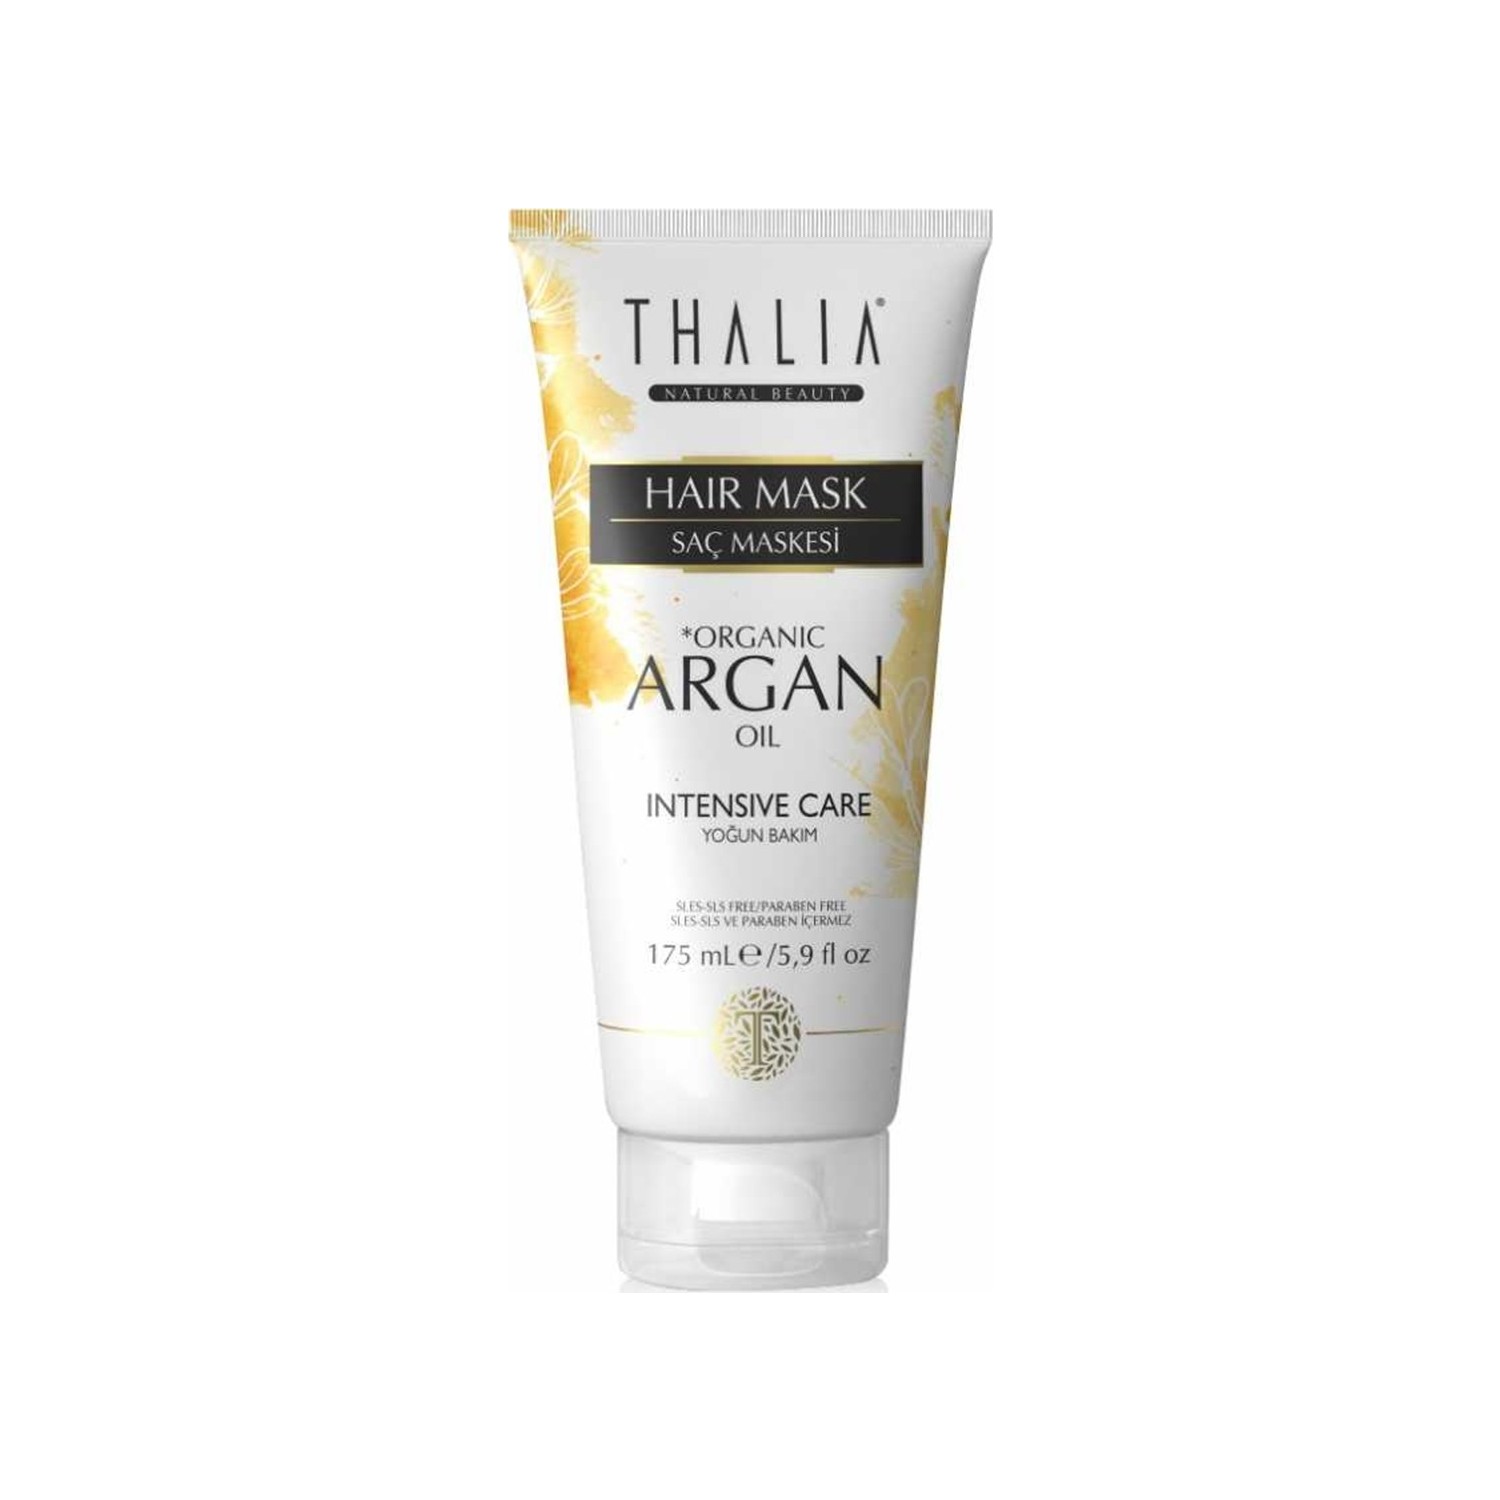 цена Маска для ухода за волосами Thalia с органическим аргановым маслом, 175 мл